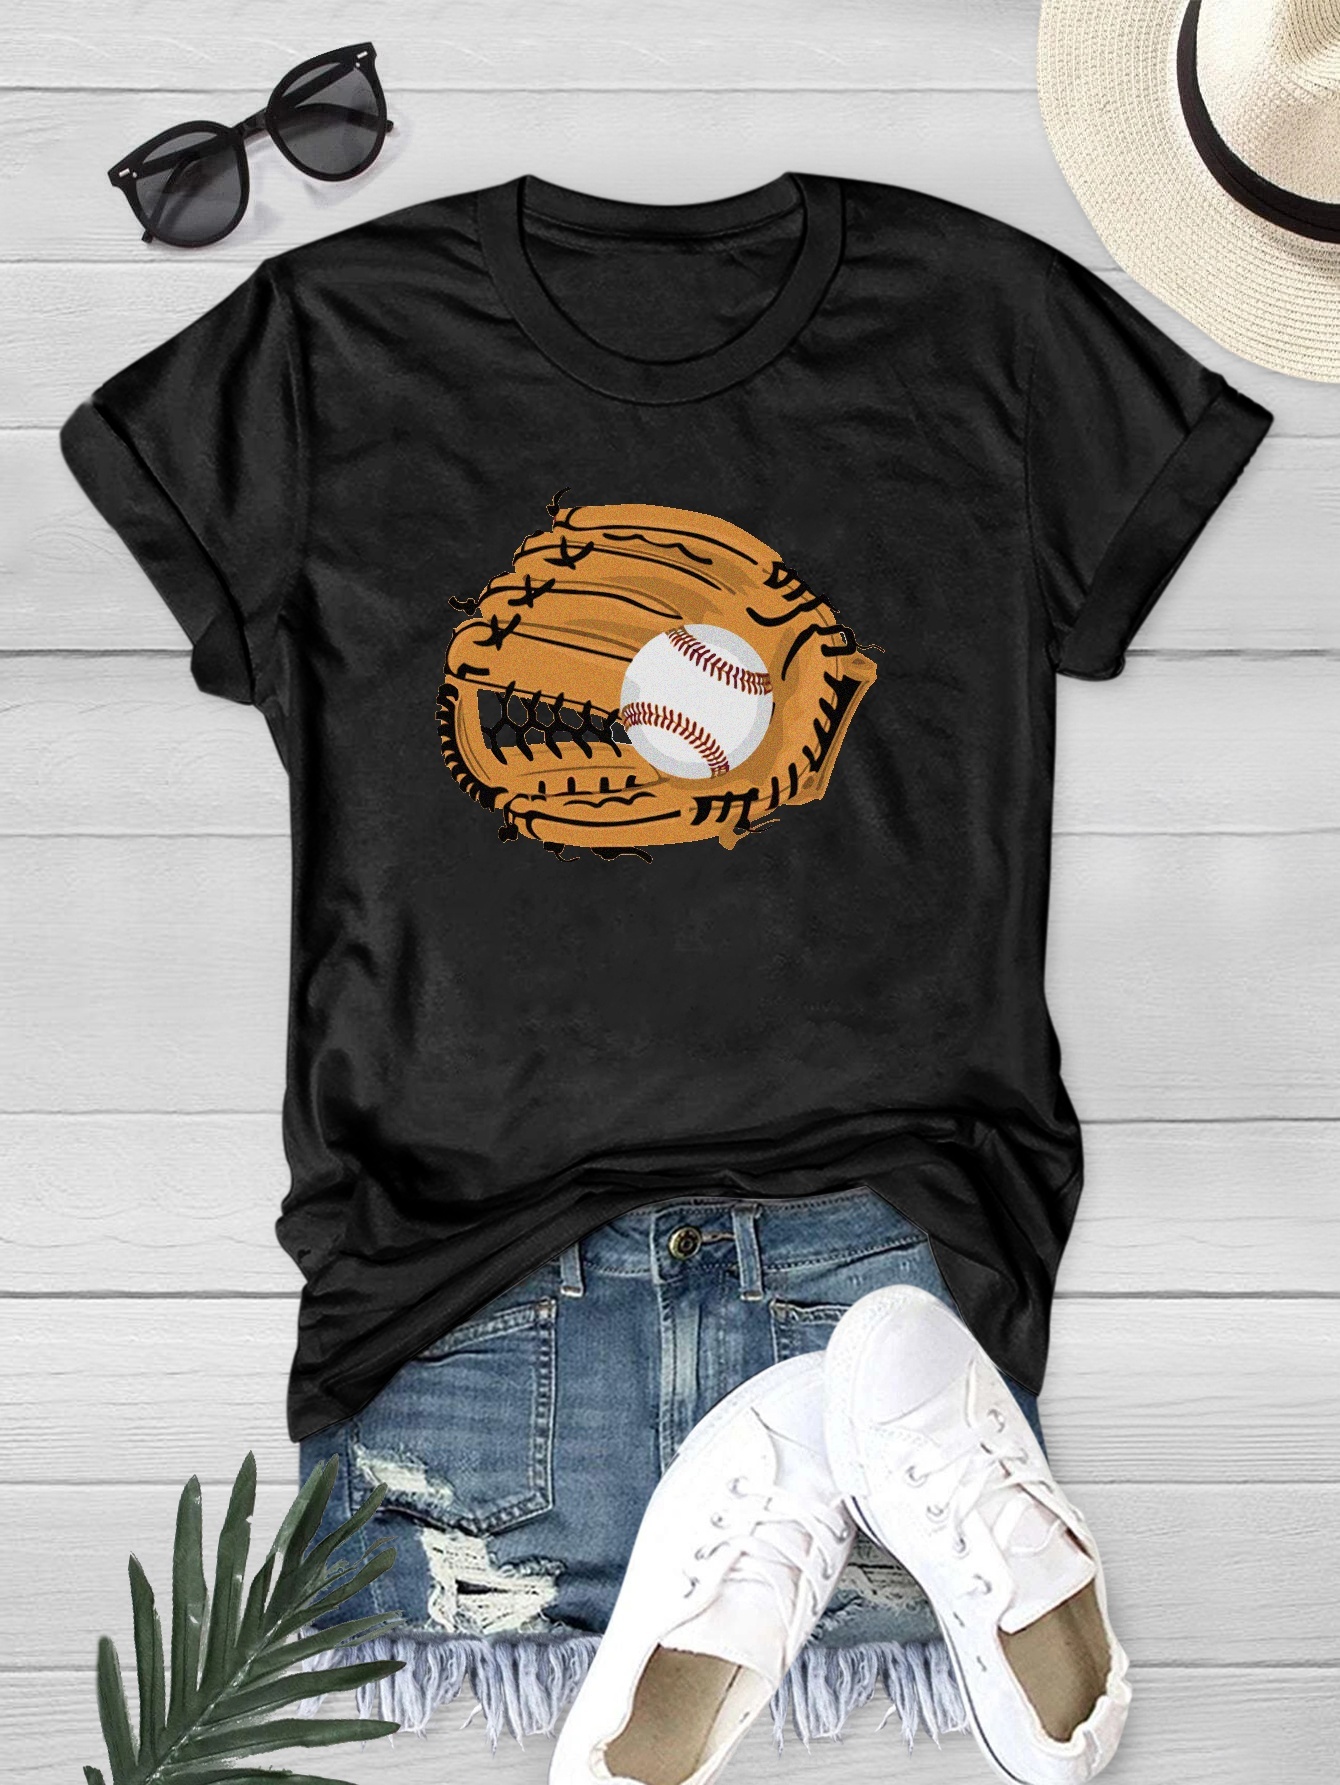 11 Best Baseball shirt outfit ideas